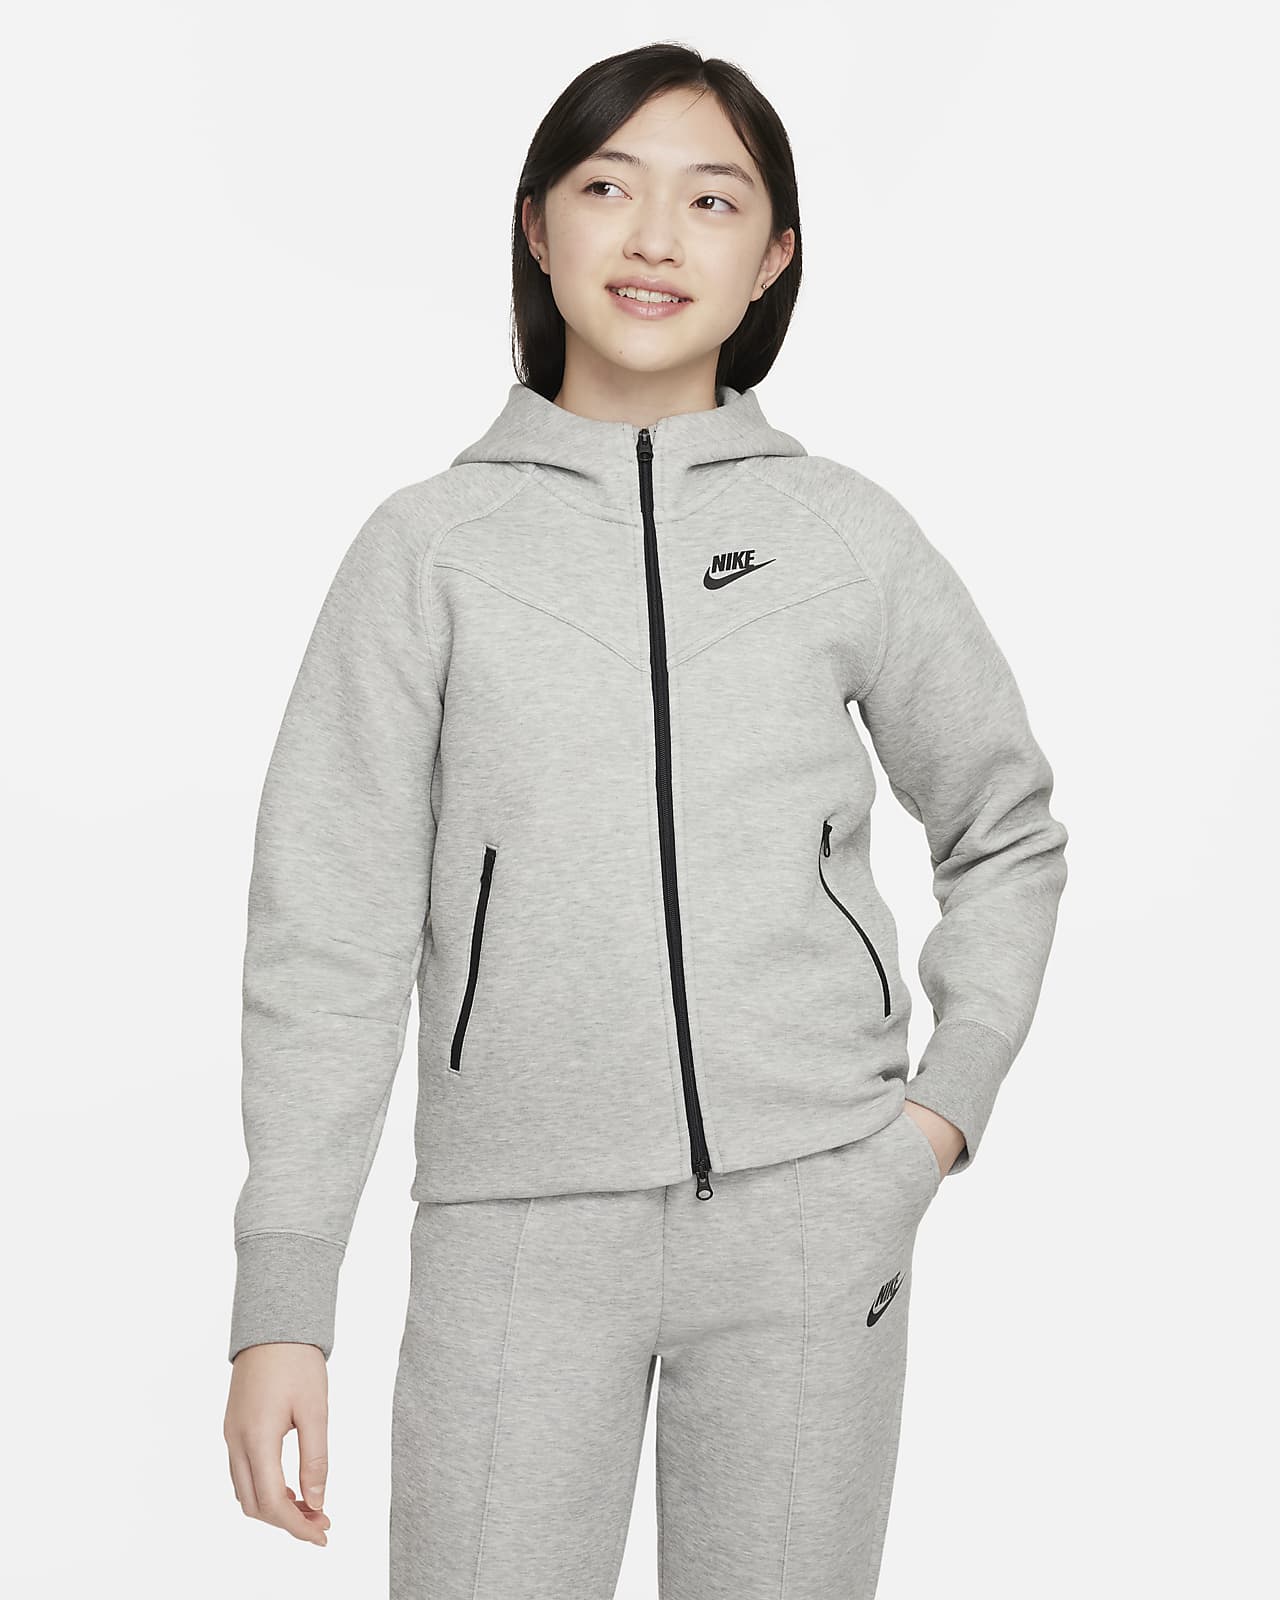 Μπλούζα με κουκούλα και φερμουάρ σε όλο το μήκος Nike Sportswear Tech Fleece για μεγάλα κορίτσια